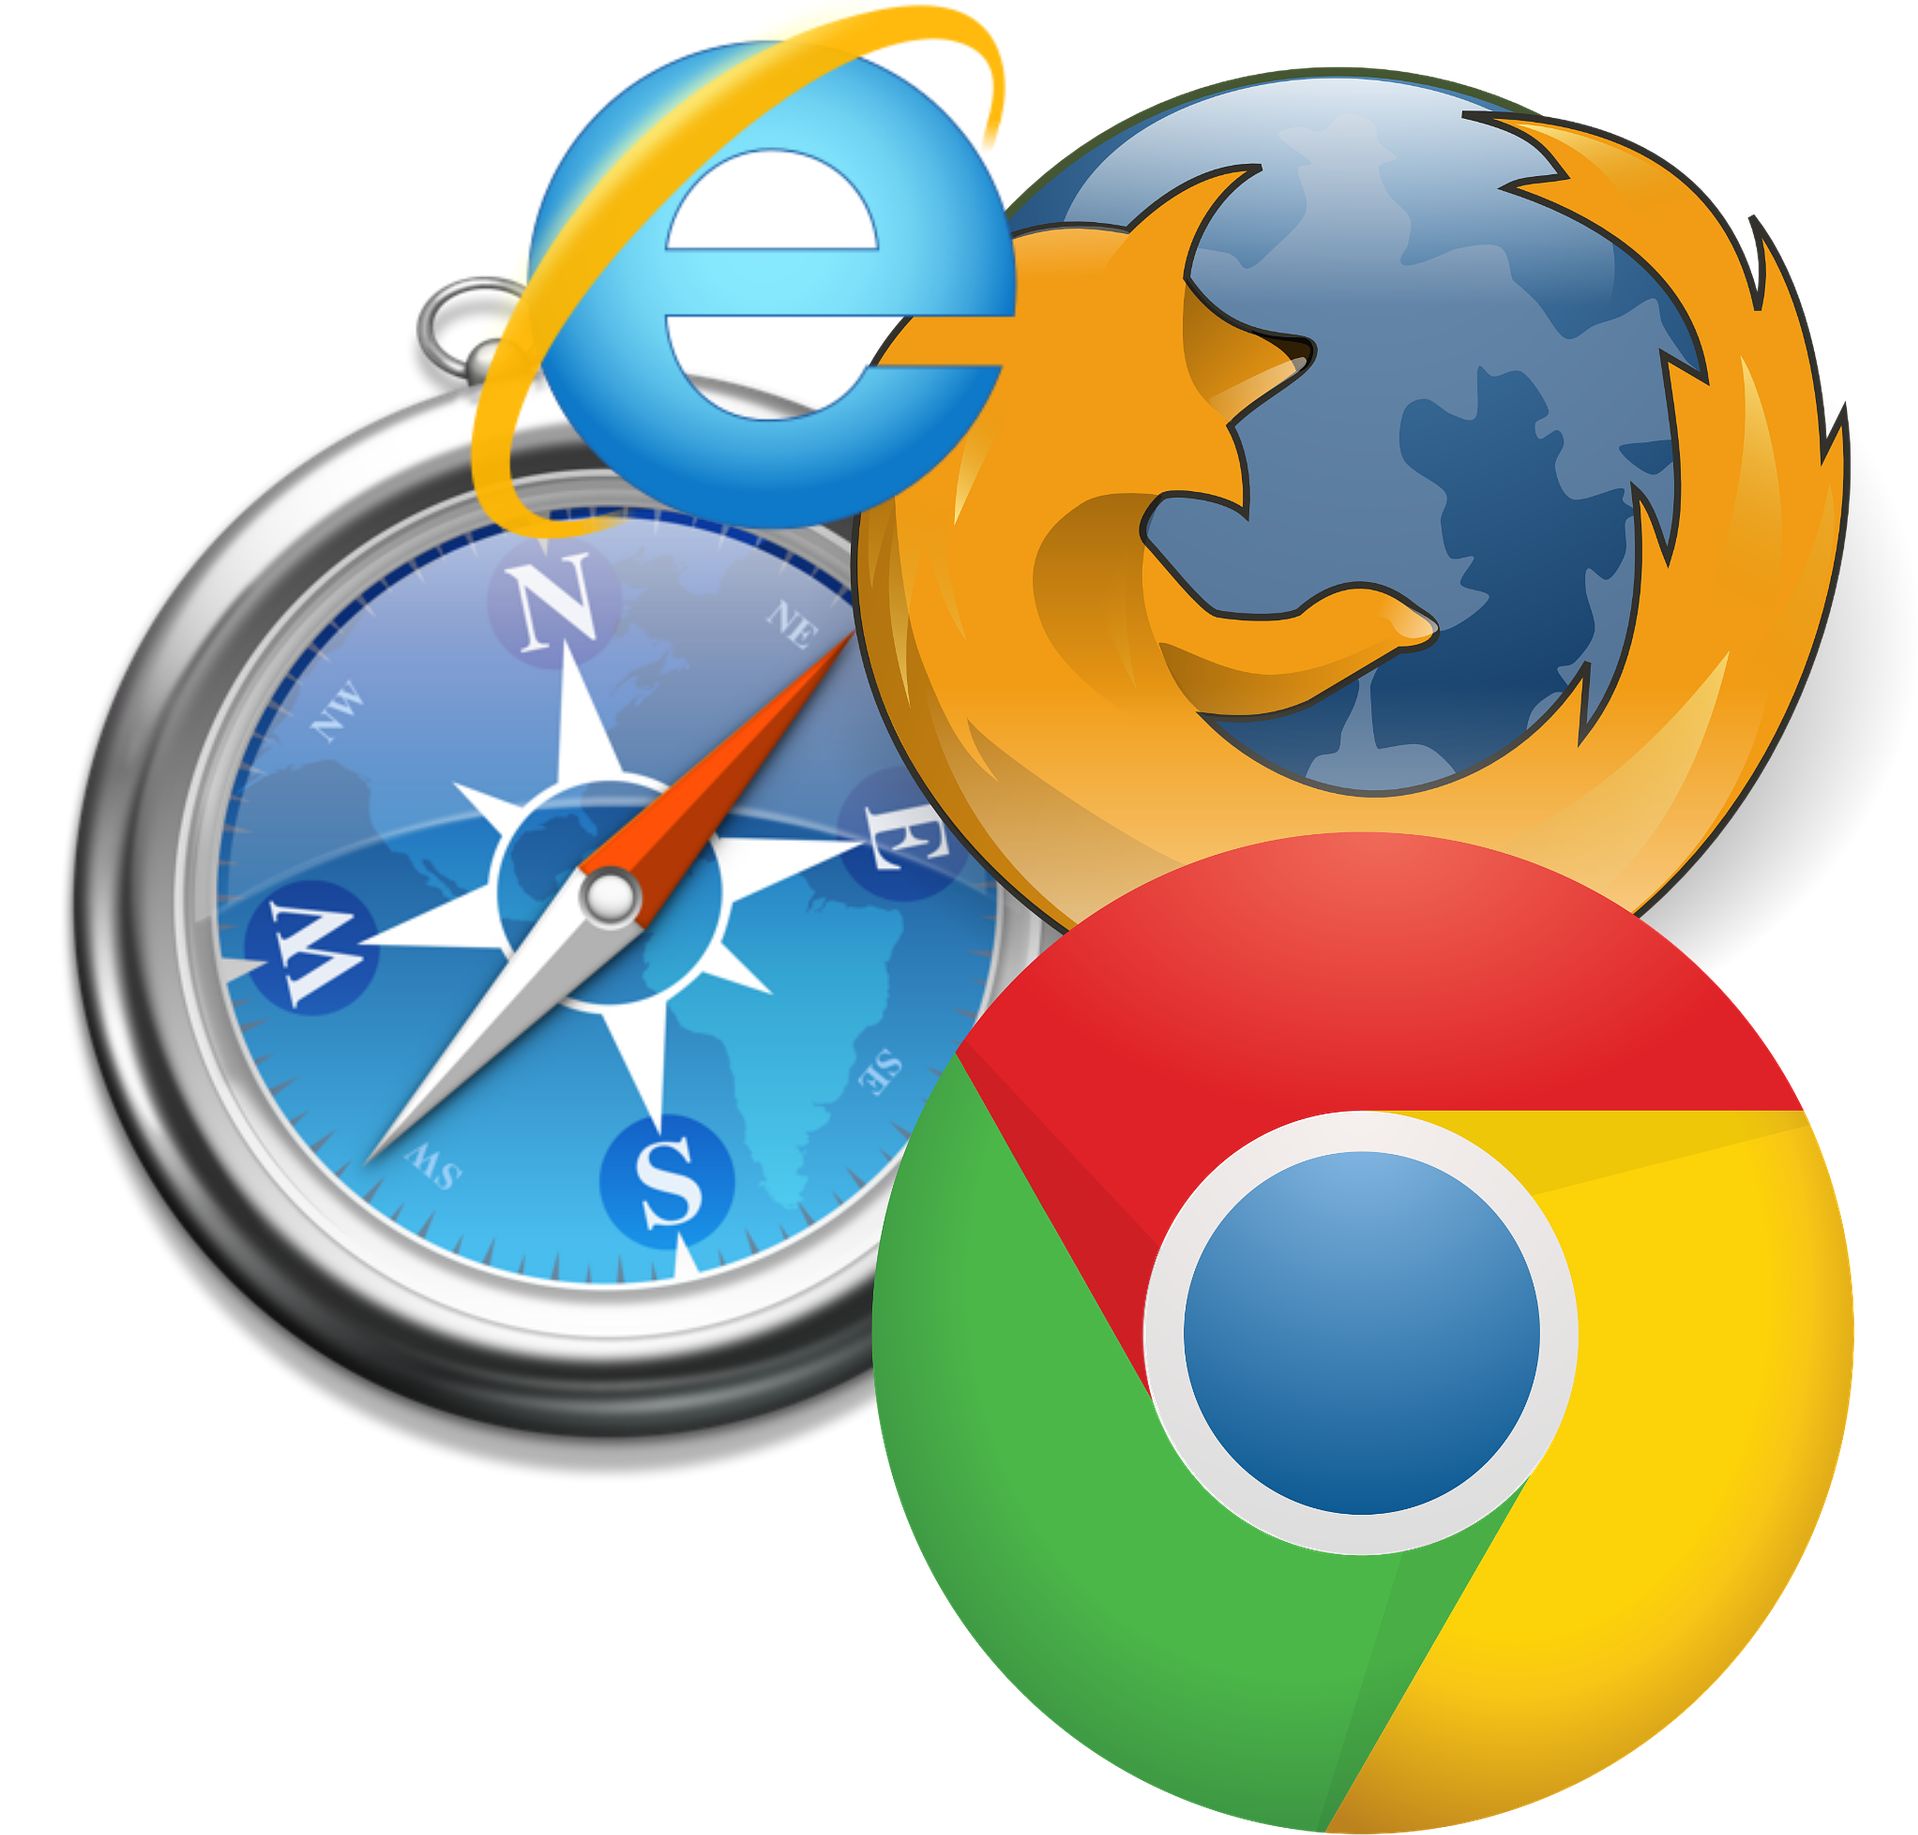 Logos der 4 großen Browser zusammengesetzt